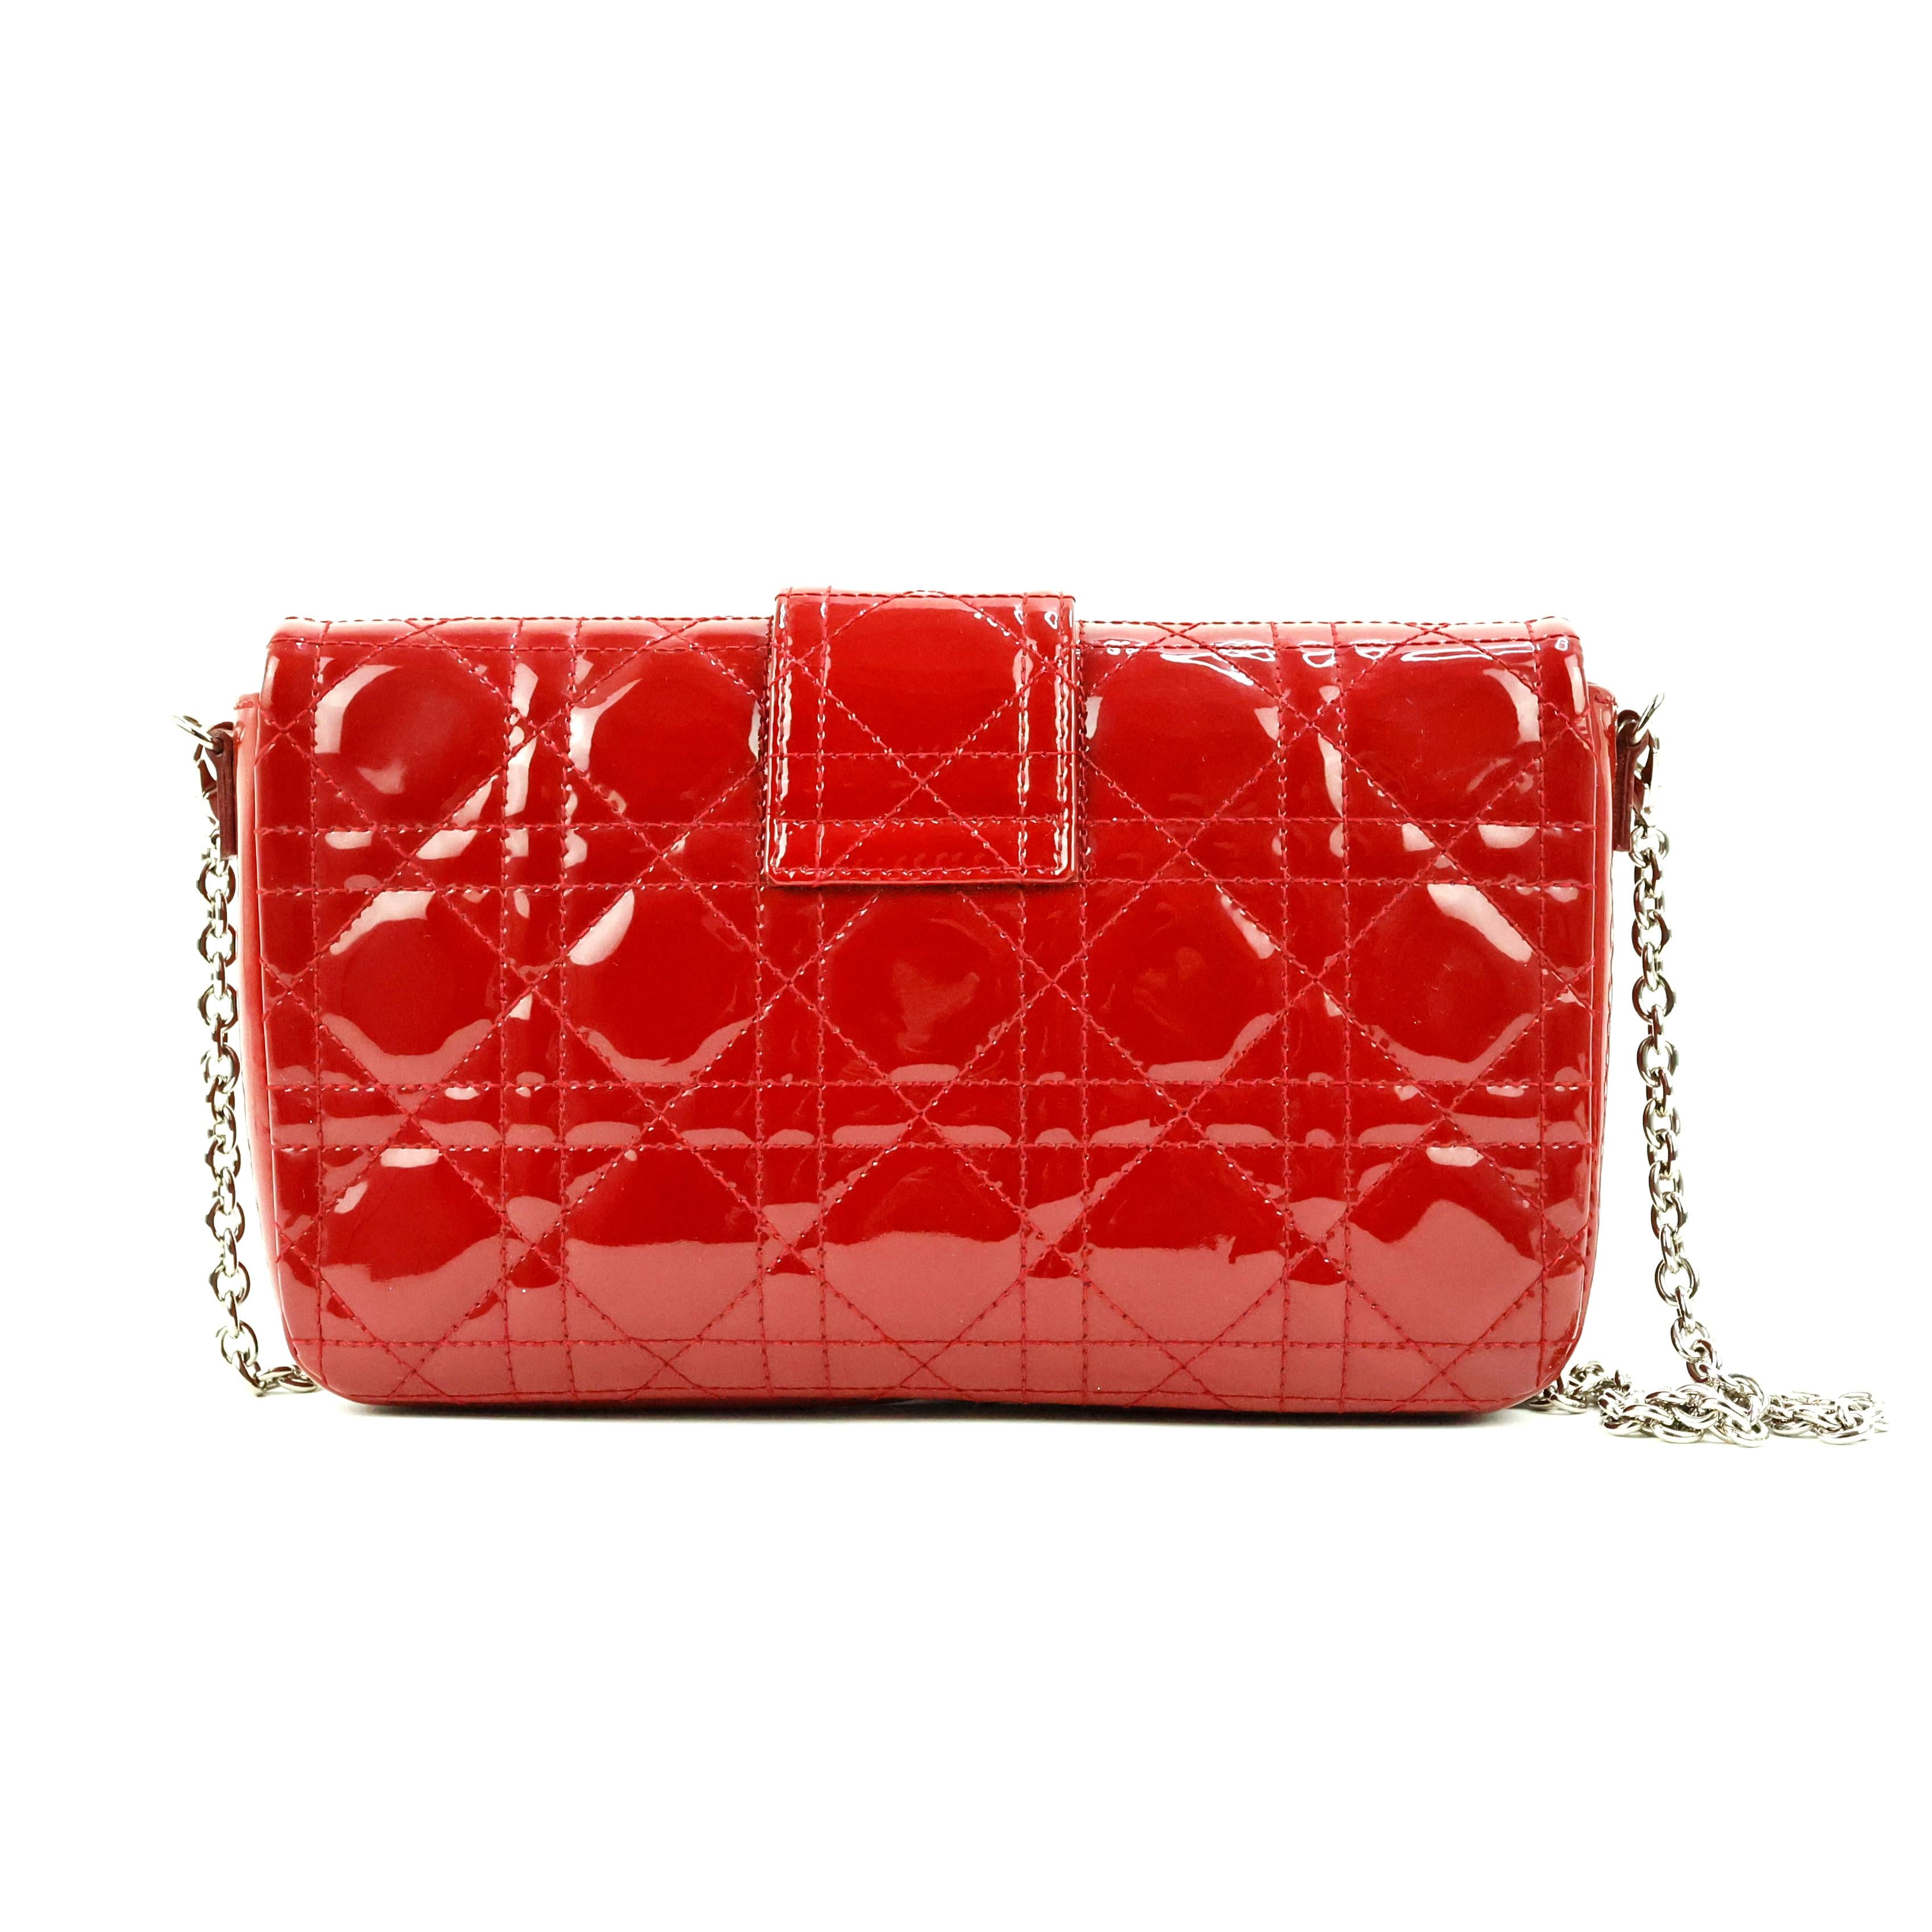 Dior Miss Dior sac à bandoulière, en cuir de couleur rouge, avec fermeture en argent.

Condit :
Vraiment bien.

Emballage/accessoires :
Sac à poussière.

Mesures :
21,5cm x 13cm x 4cm